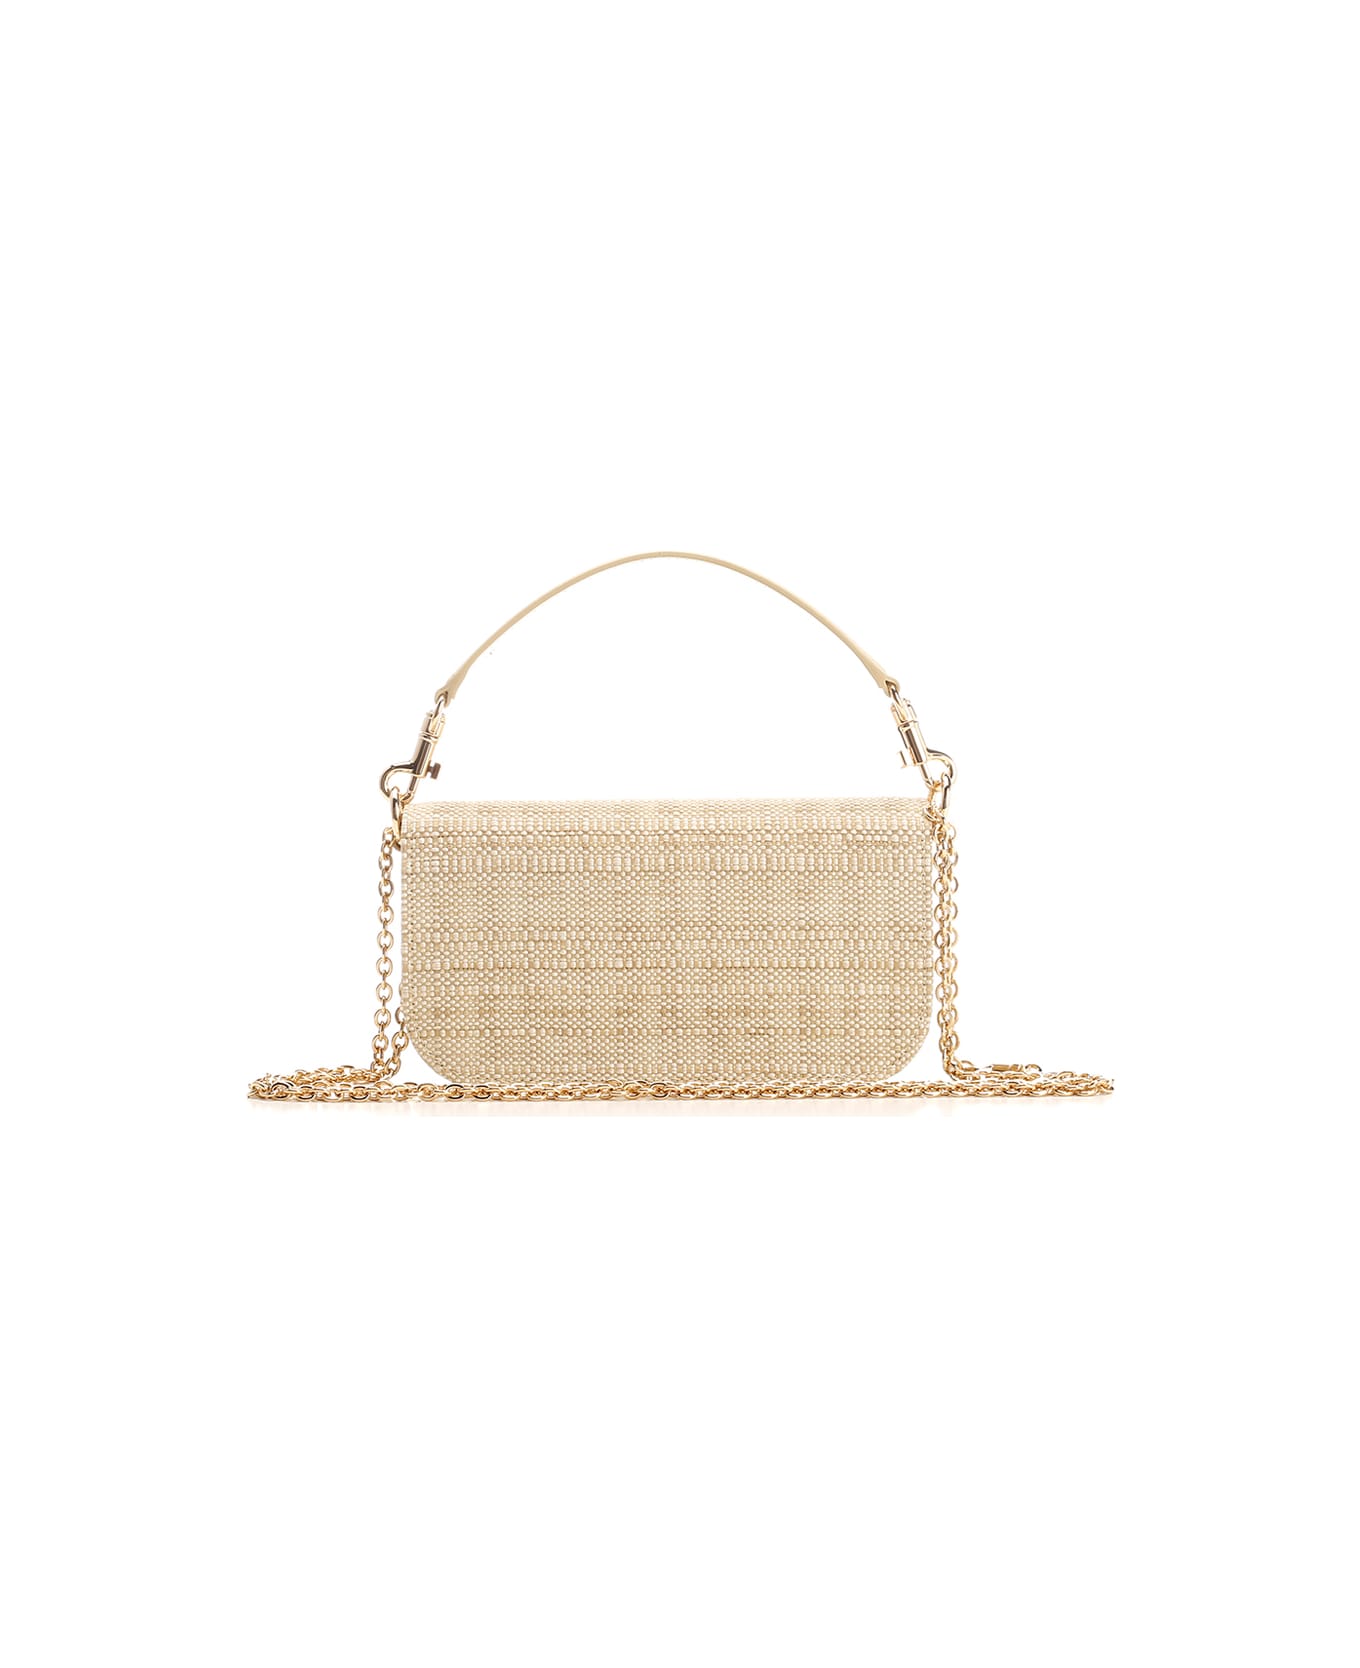 Dolce & Gabbana '3.5' Raffia Shoulder Bag - Sabbia/sabbia